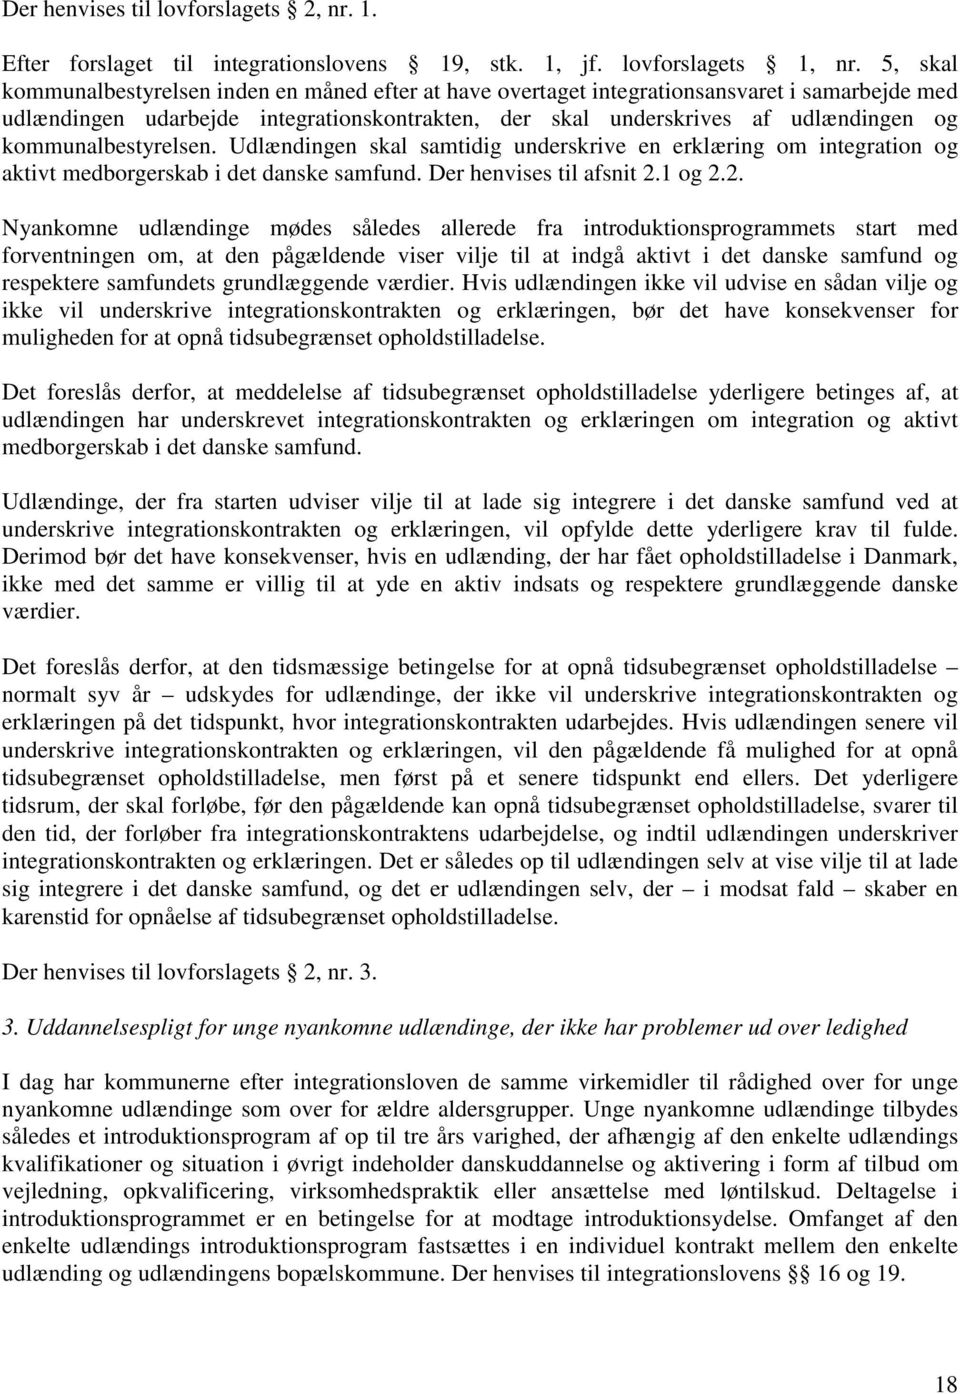 kommunalbestyrelsen. Udlændingen skal samtidig underskrive en erklæring om integration og aktivt medborgerskab i det danske samfund. Der henvises til afsnit 2.